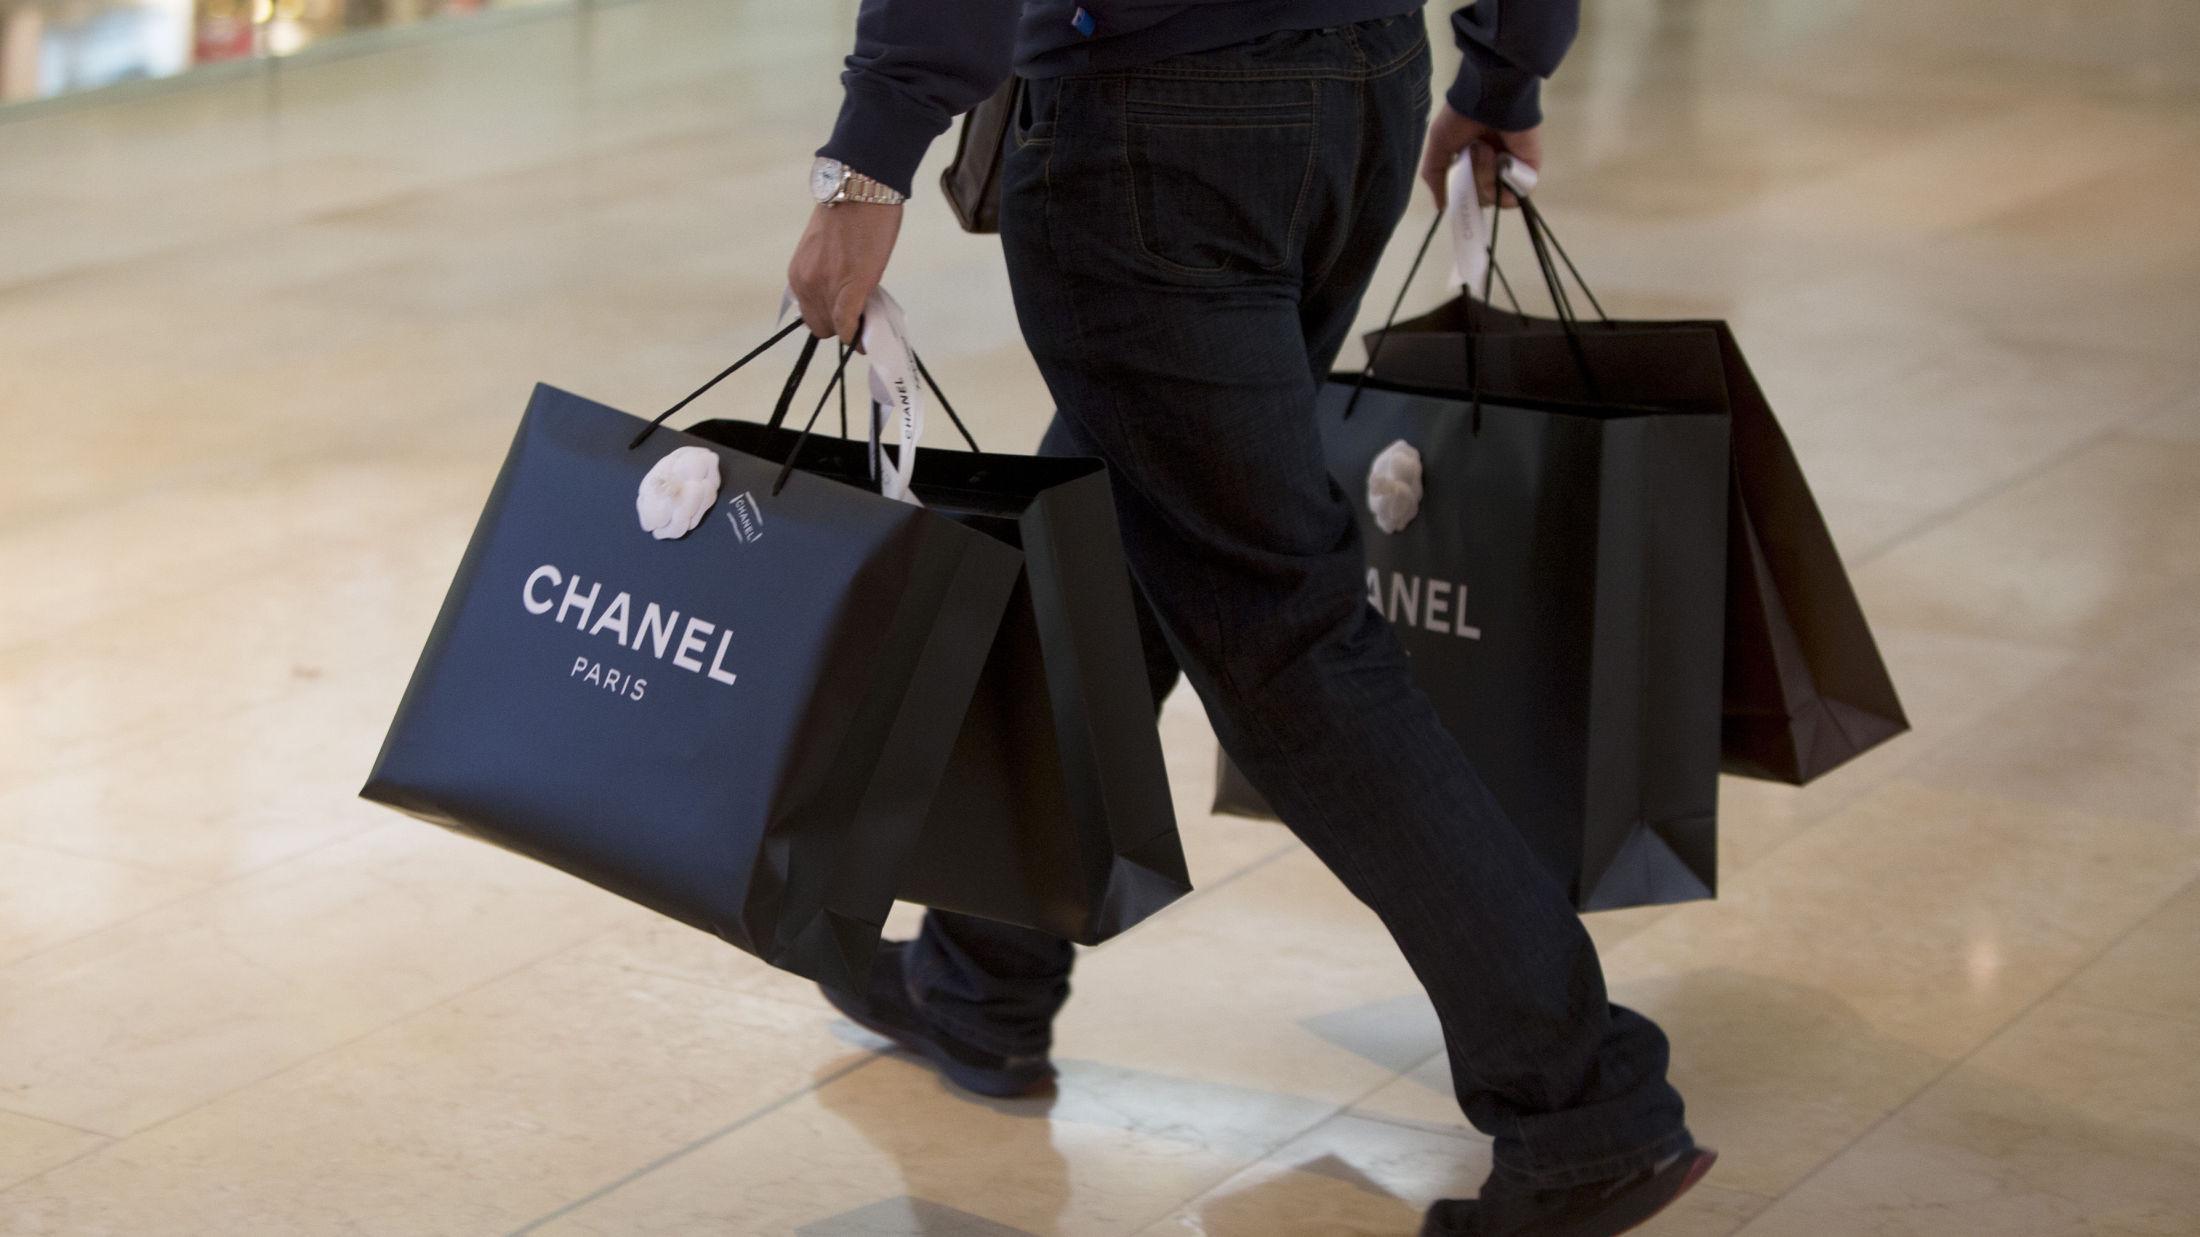 KOSTBARE VARER: En Chanel-veske kan gjerne ha verdi fra 20.000 kroner og oppover, men om du blir tatt for ikke å ha betalt moms på grensen til Norge, kan tusener av kroner i bot og inndragelse av varen være konsekvensen. Foto: Getty Images